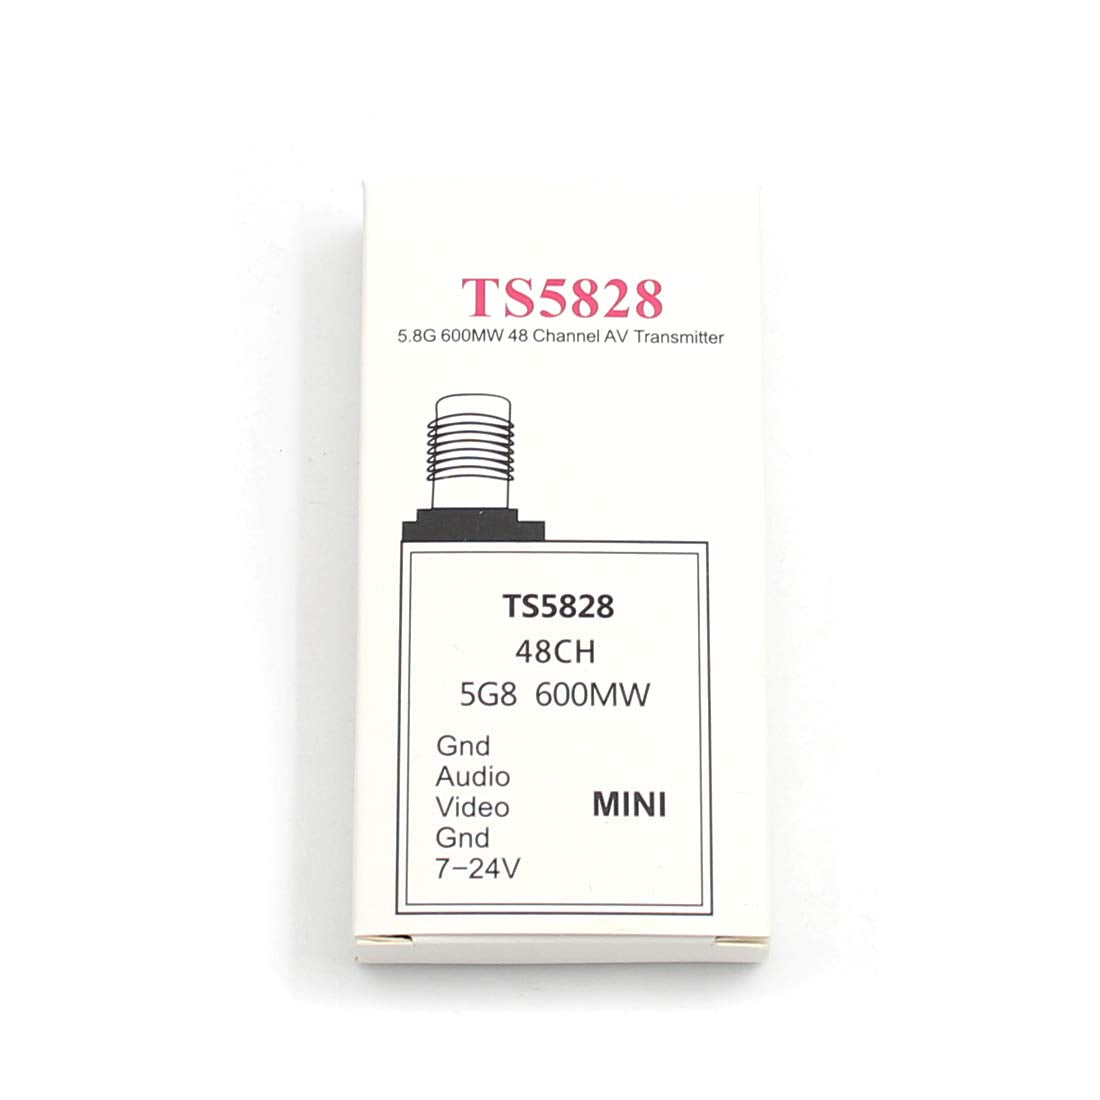 TS5828 Mini 48CH 600MW Transmitter